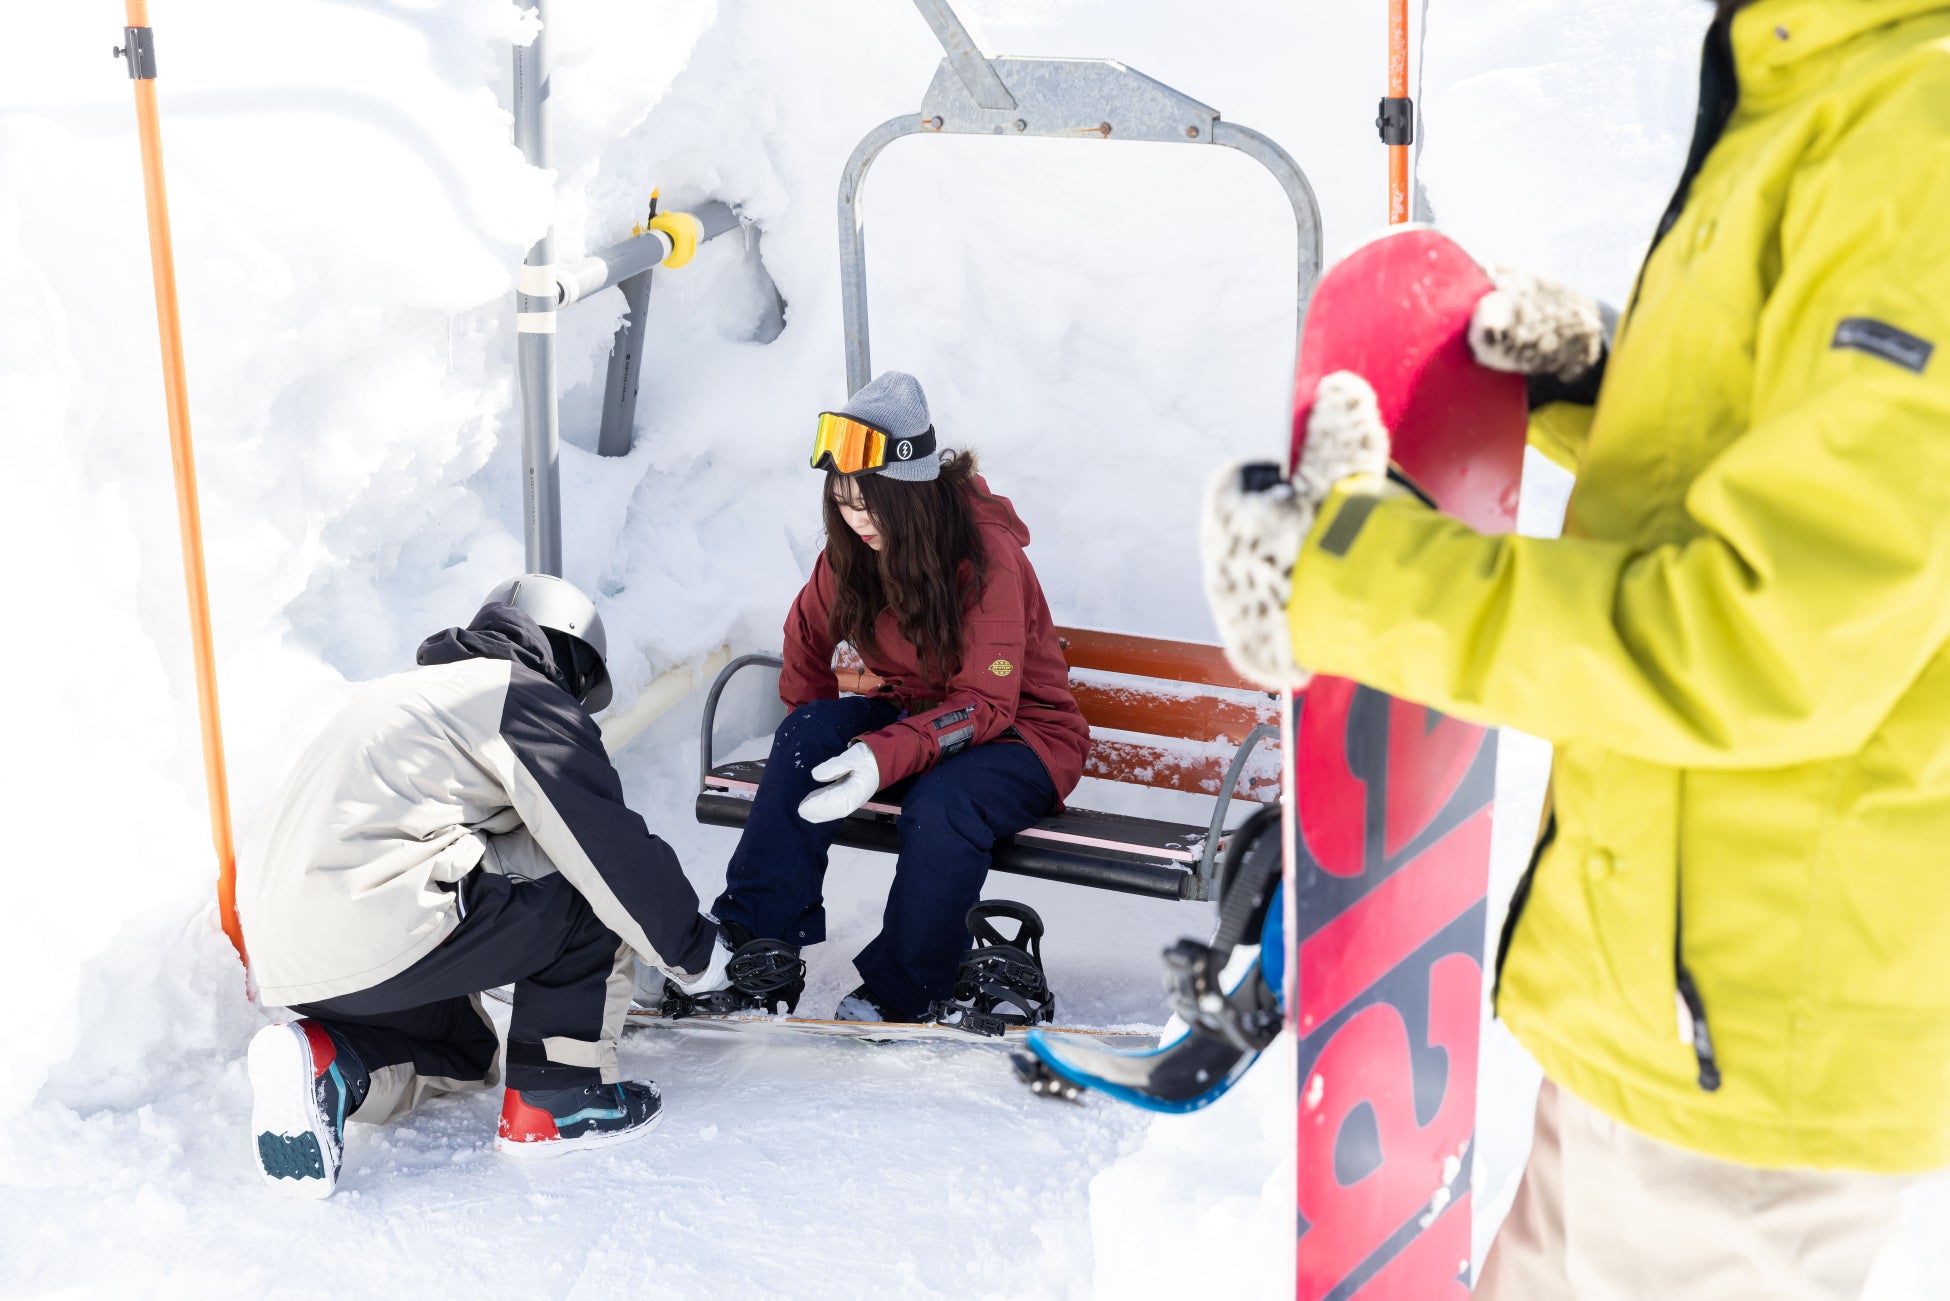 大人も子どももスノーボードデビューなら竜王スキーパーク！毎日開催無料スノボ―デビューレッスンで、初めてを徹底的にサポートします！